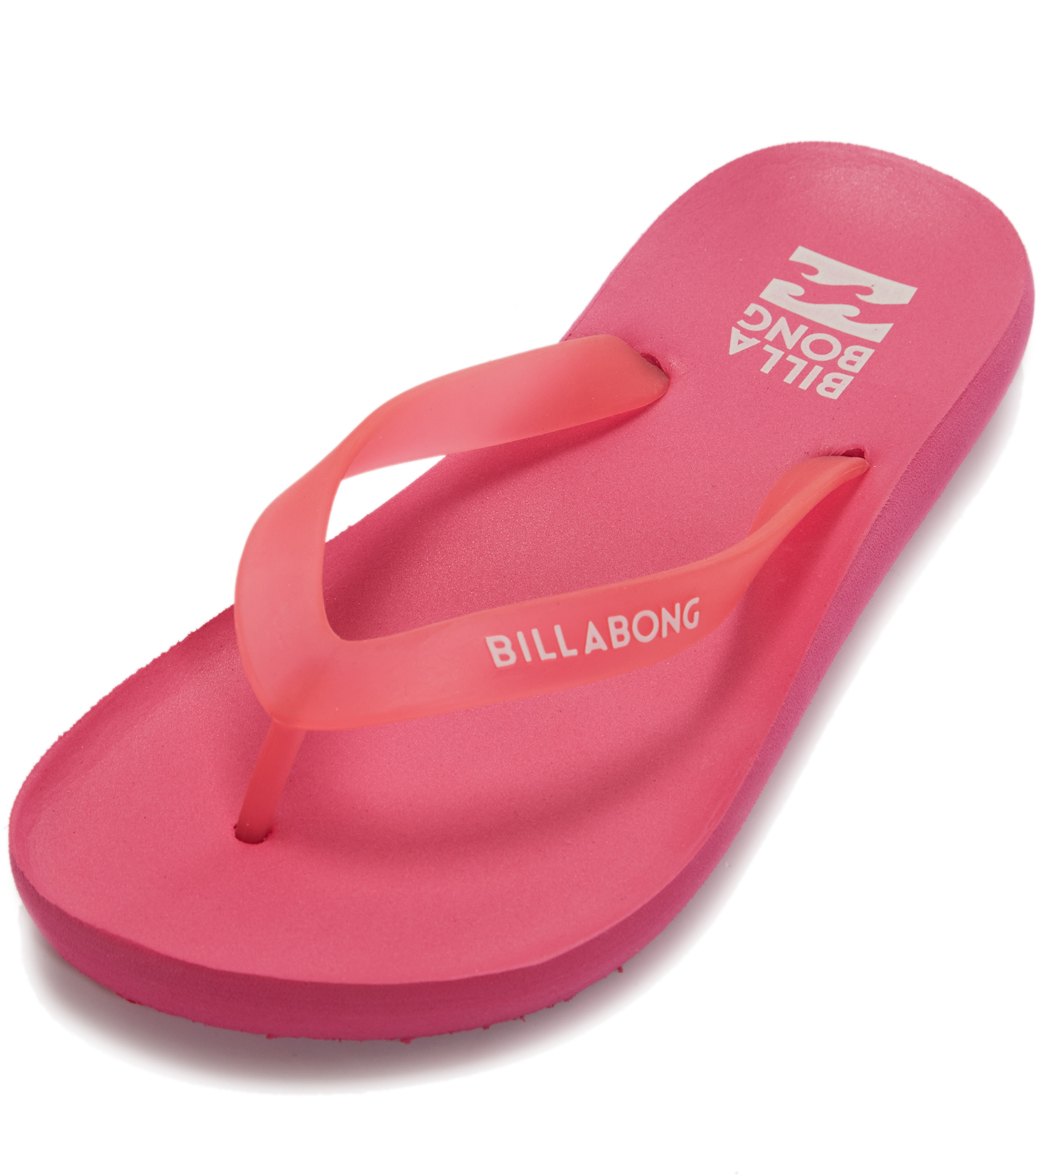 billabong sandals canada